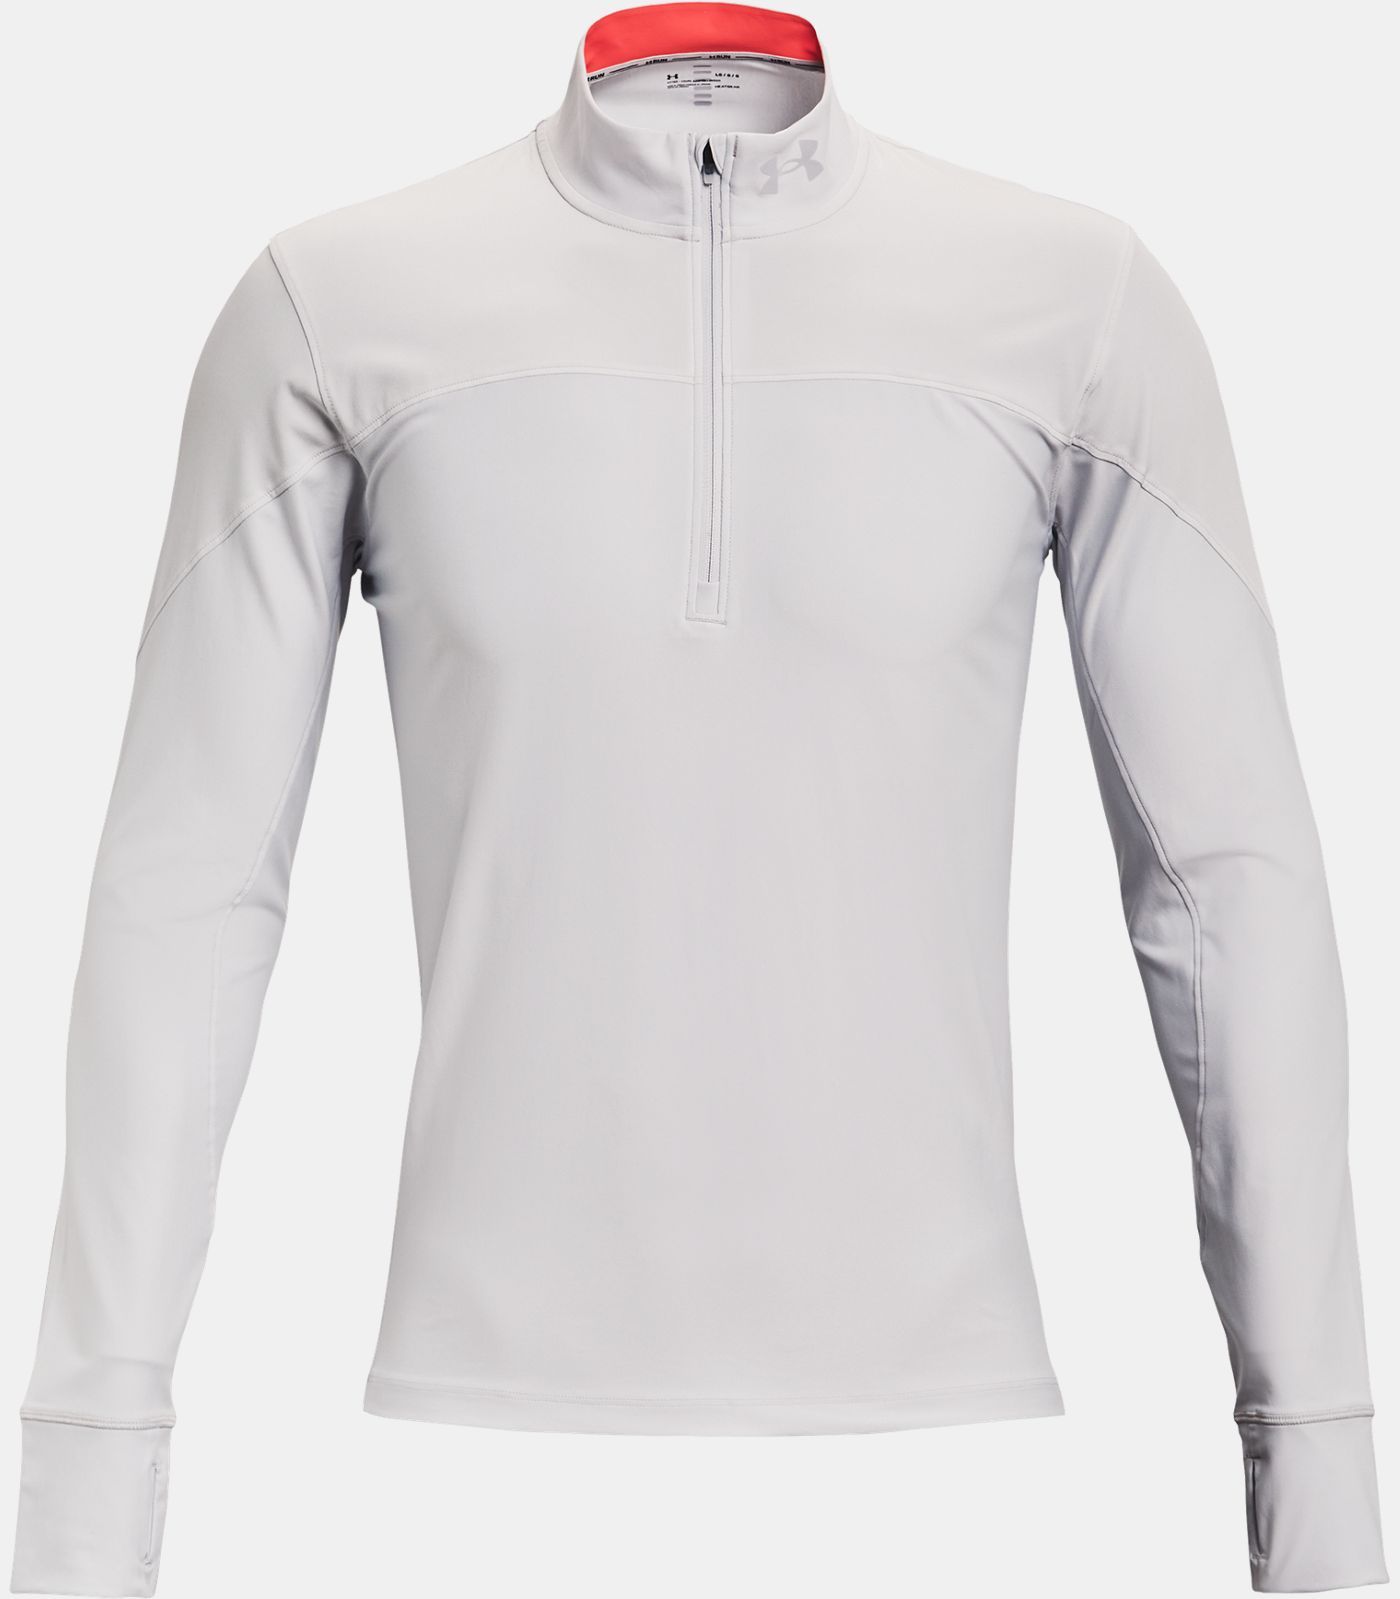 Under Armour Qualifier Half Zip Mod Gray Men's Sweatshirt